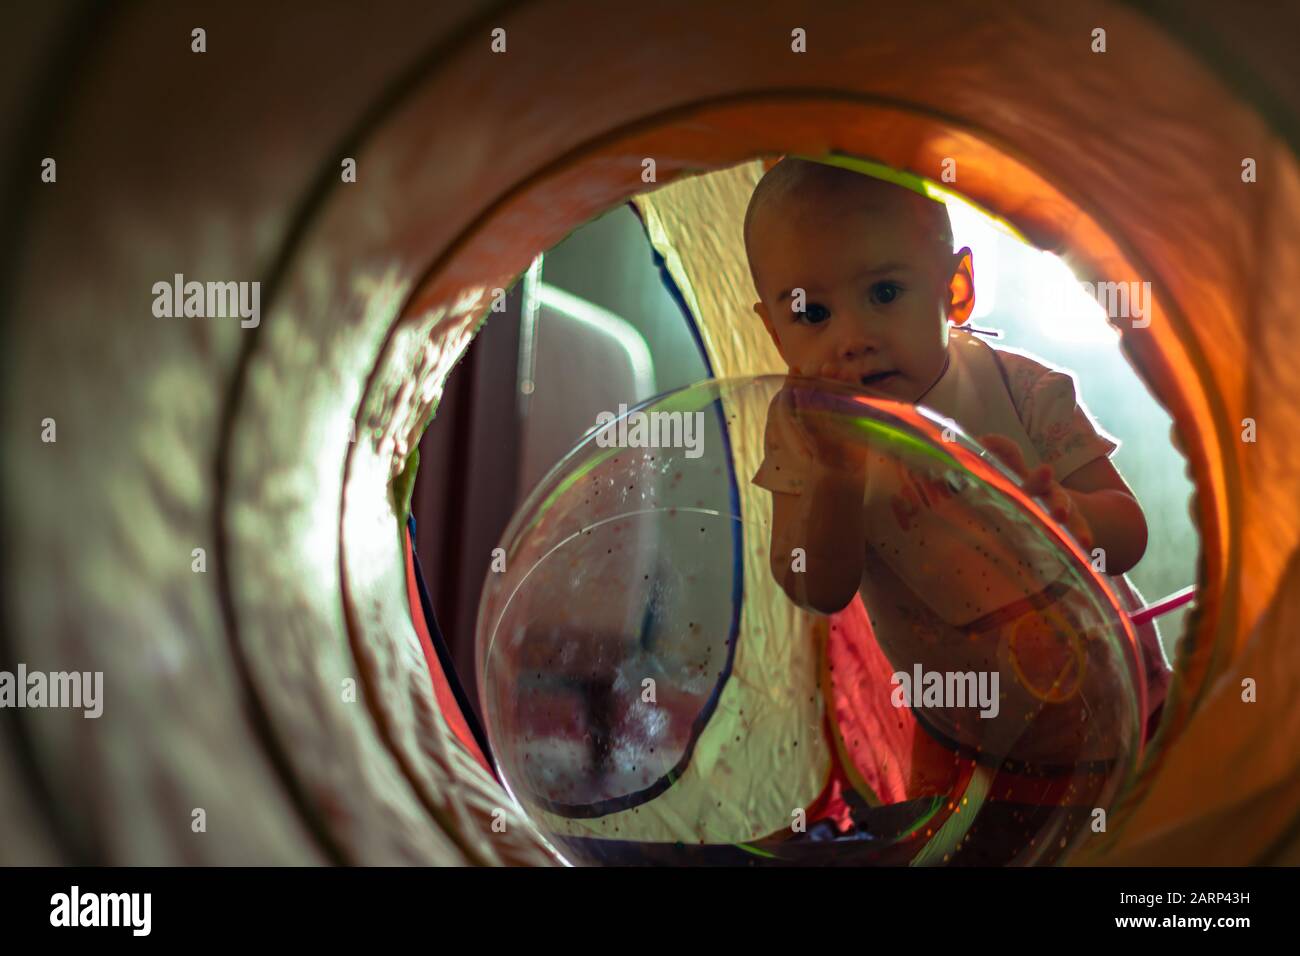 Ein süßes kleines Mädchen, das sich an den transparenten Luftballon lehnt und durch einen bunten Tunnel auf die Kamera blickt. Stockfoto